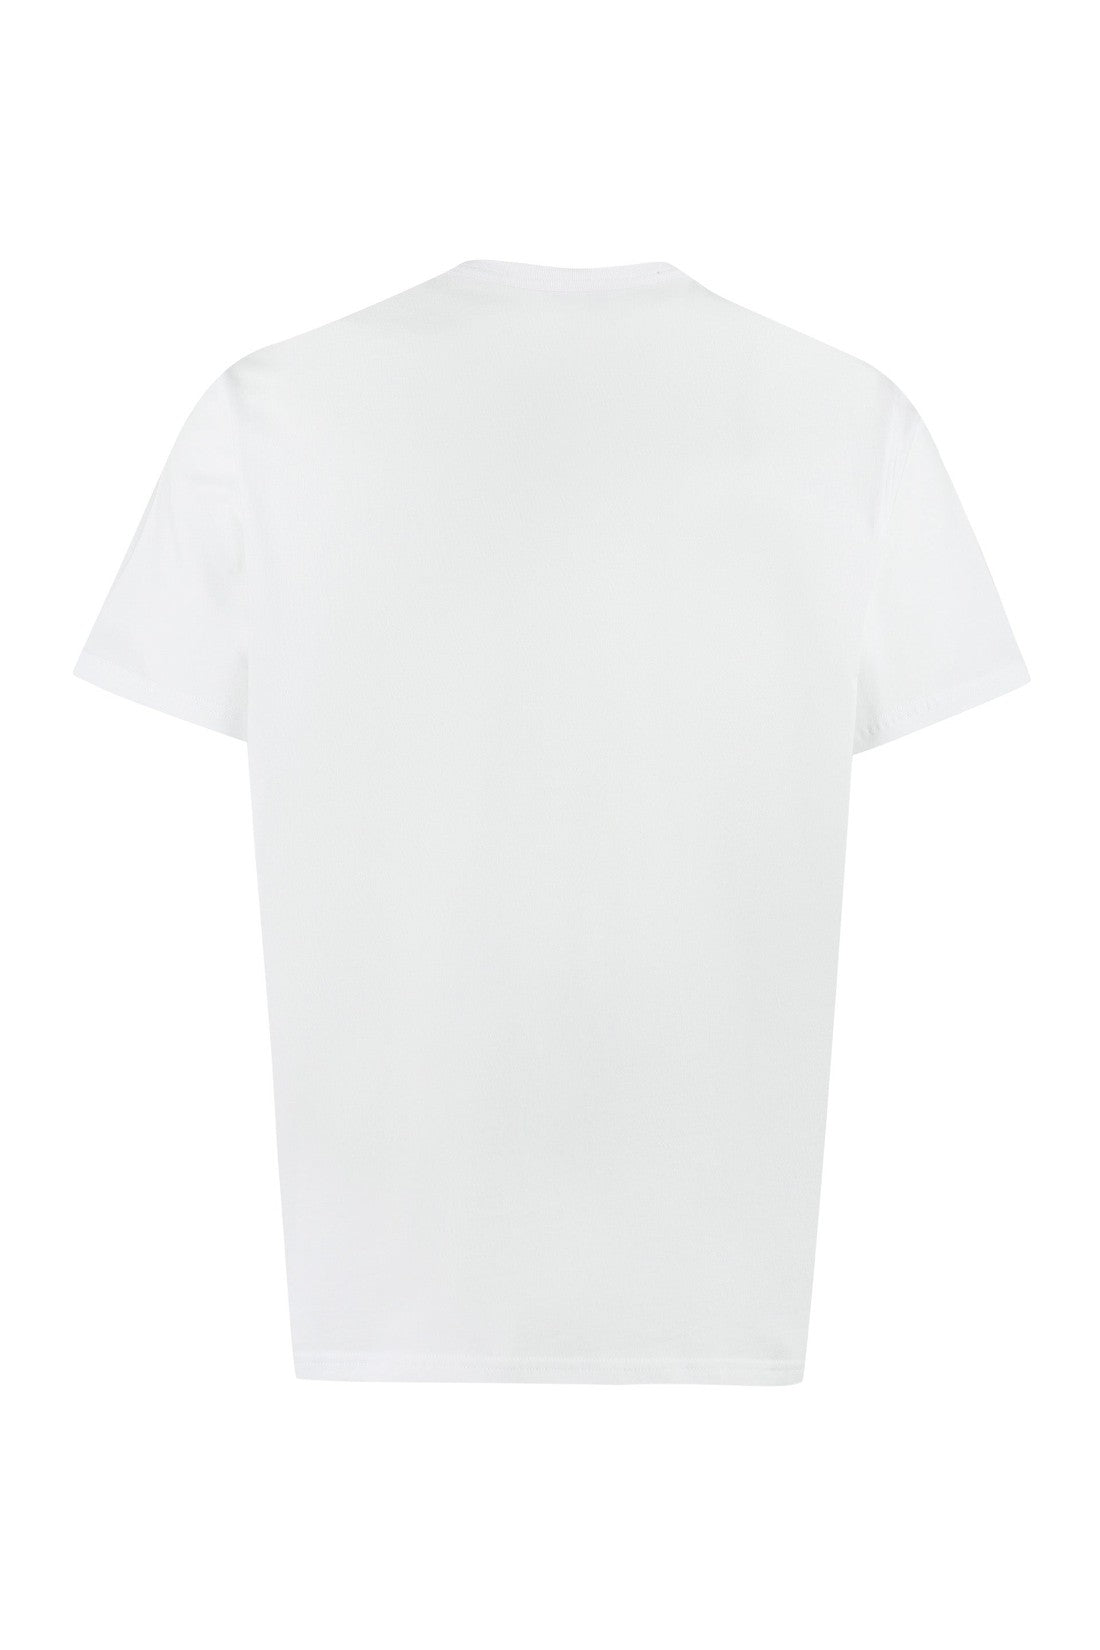 Woolrich-OUTLET-SALE-Chest pocket cotton T-shirt-ARCHIVIST